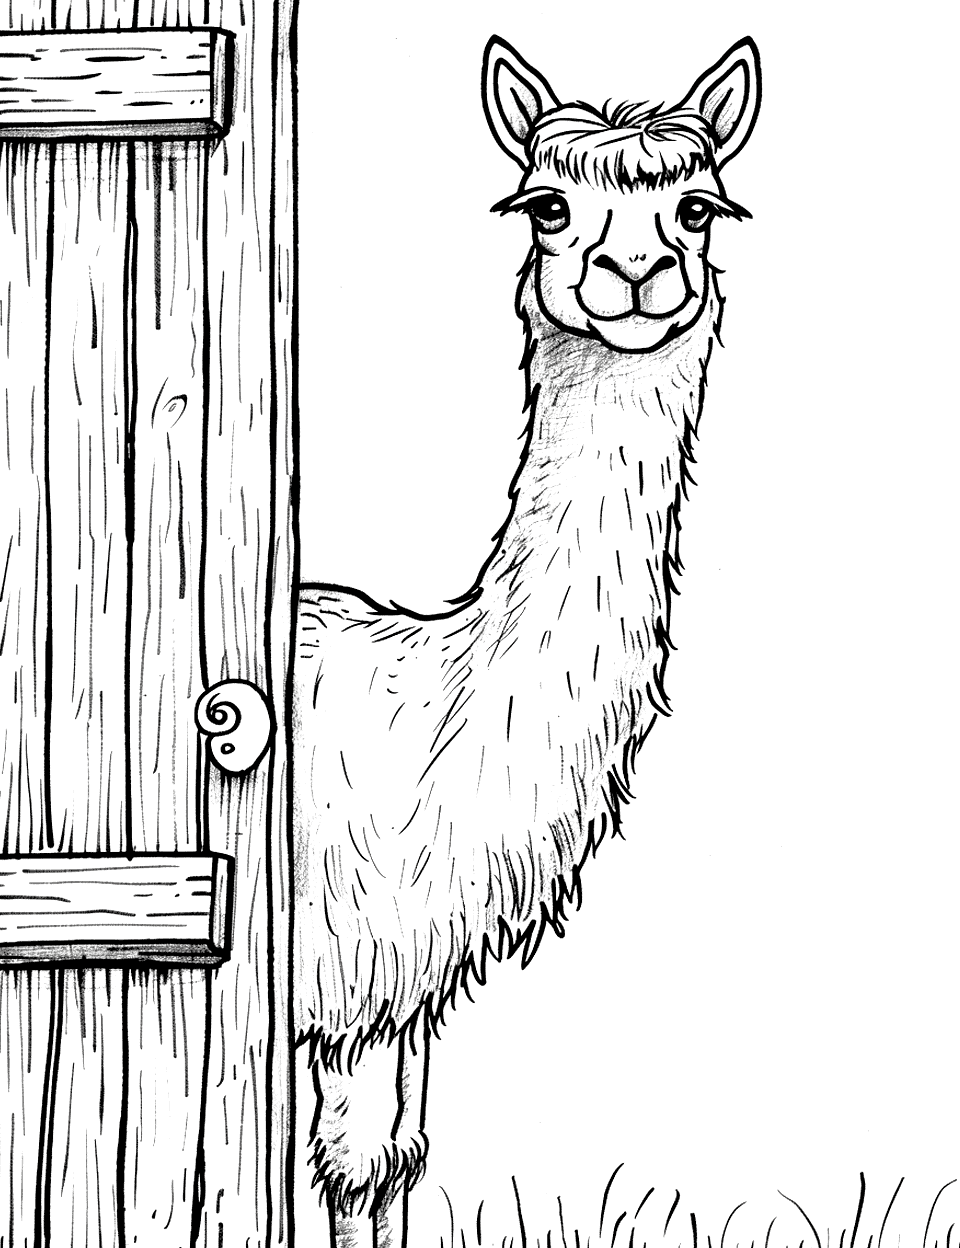 Llama at the Barn Coloring Page - A friendly llama peeking out from a barn door.